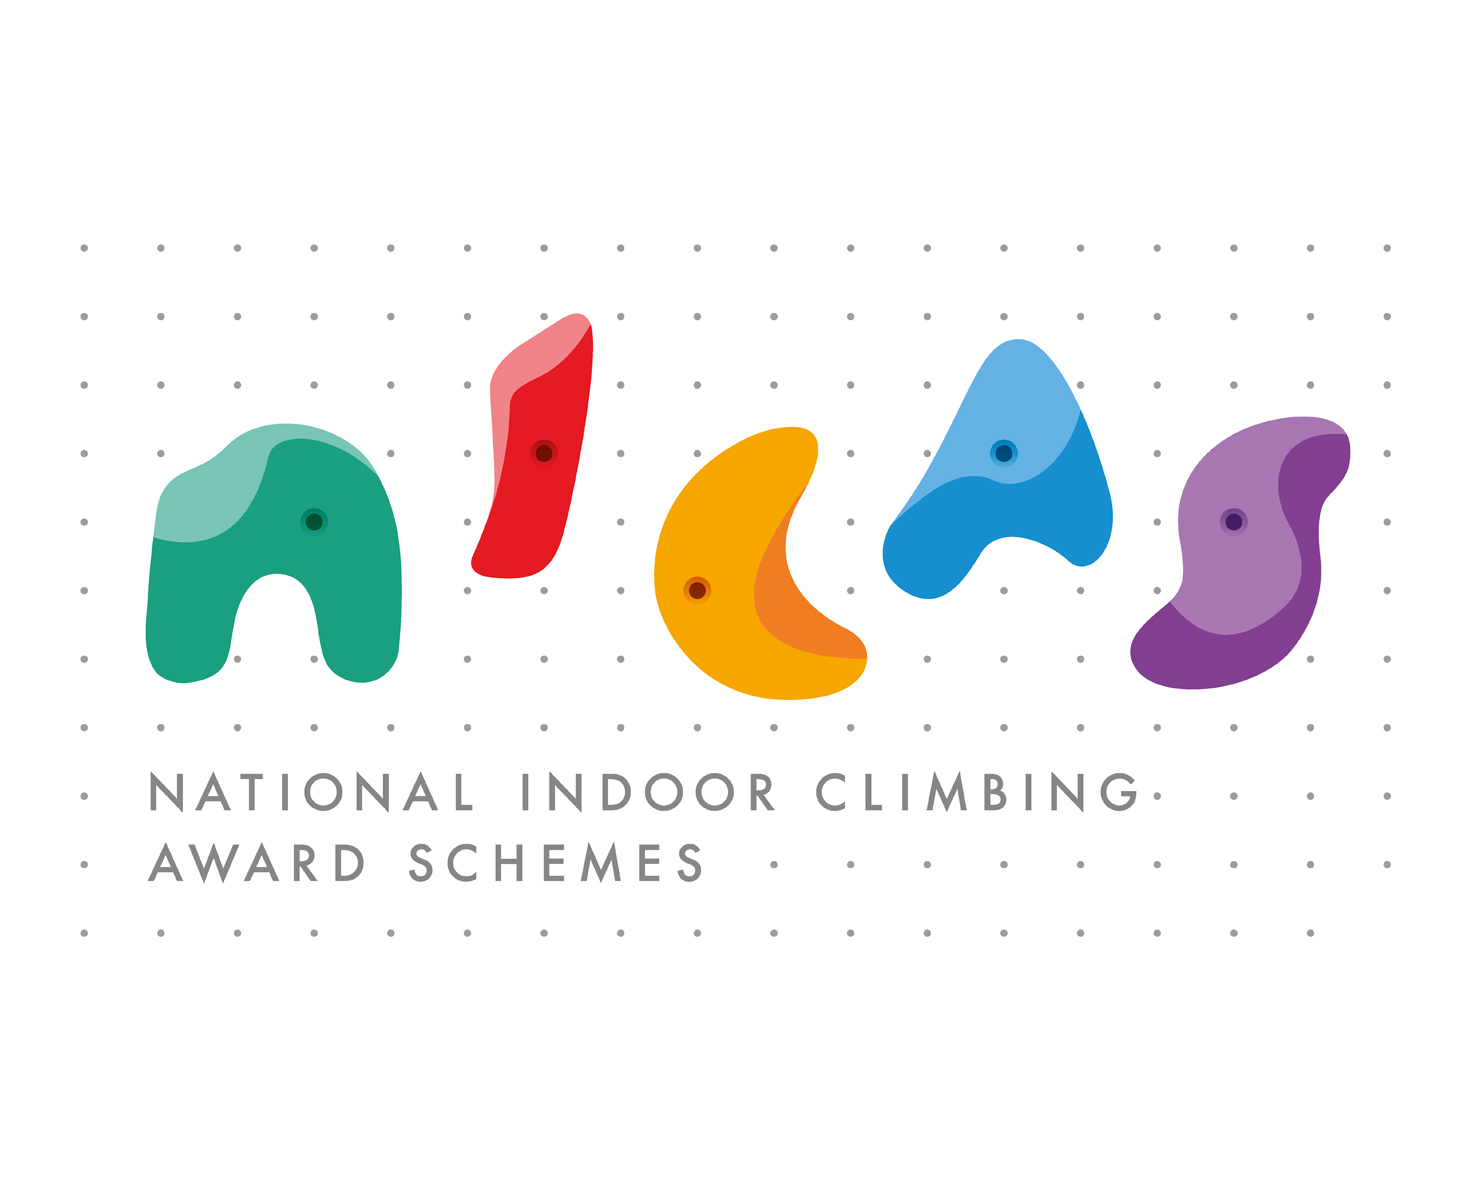 National Indoor Climbing Award